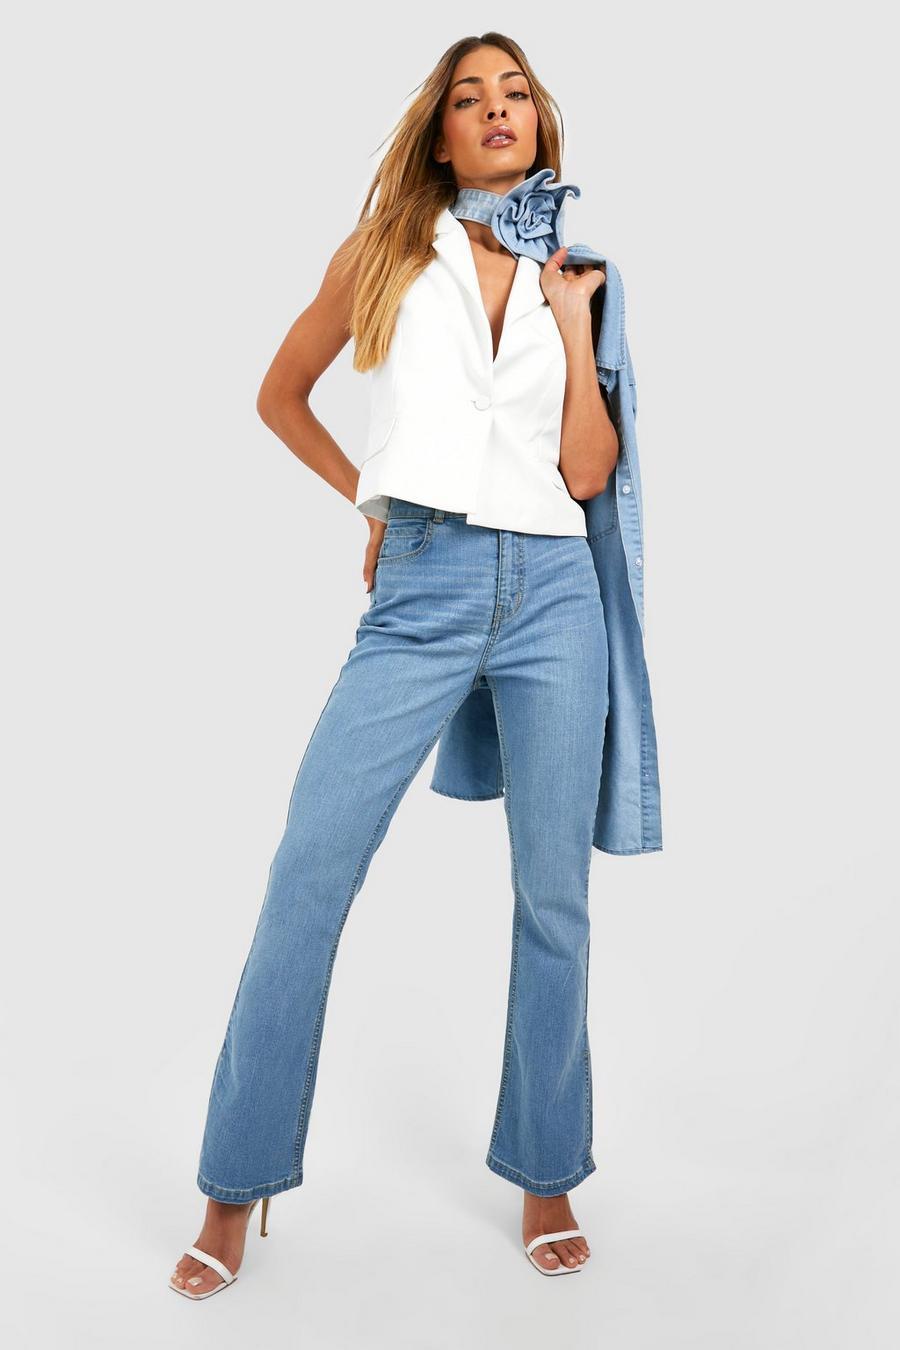 Jeans a zampa Stretch modellanti sul retro con spacco sul fondo, Acid wash light blue